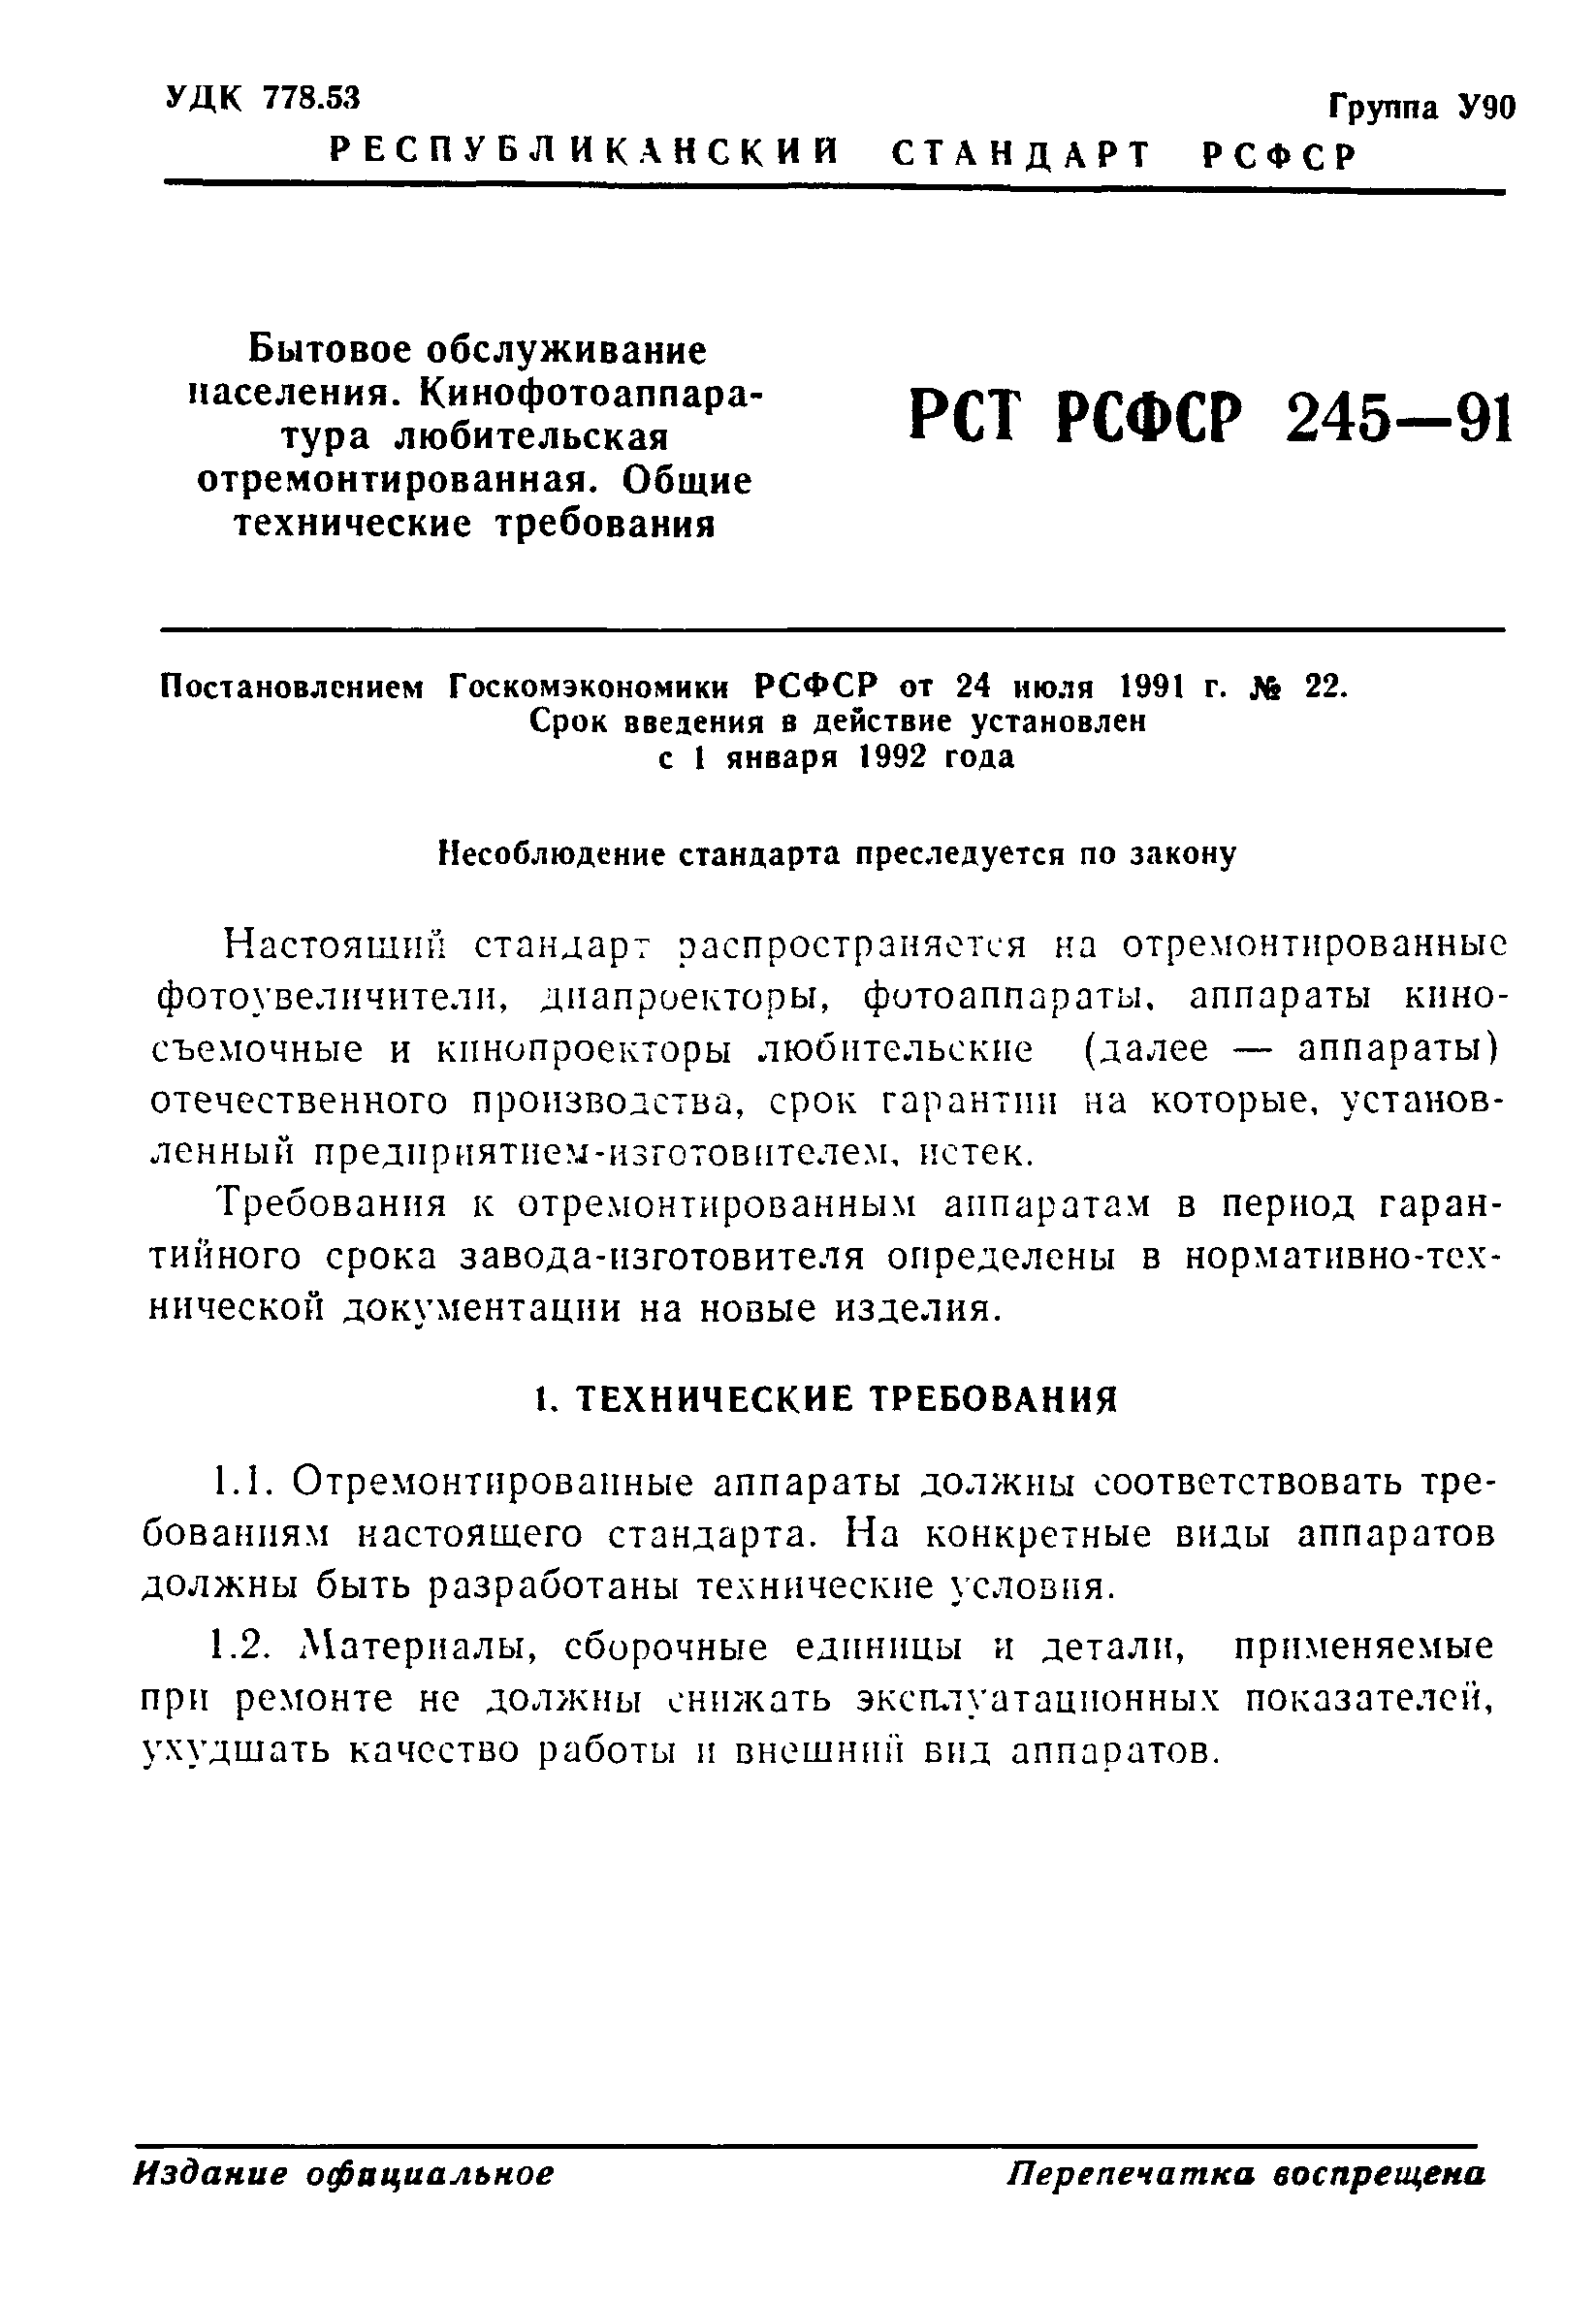 РСТ РСФСР 245-91